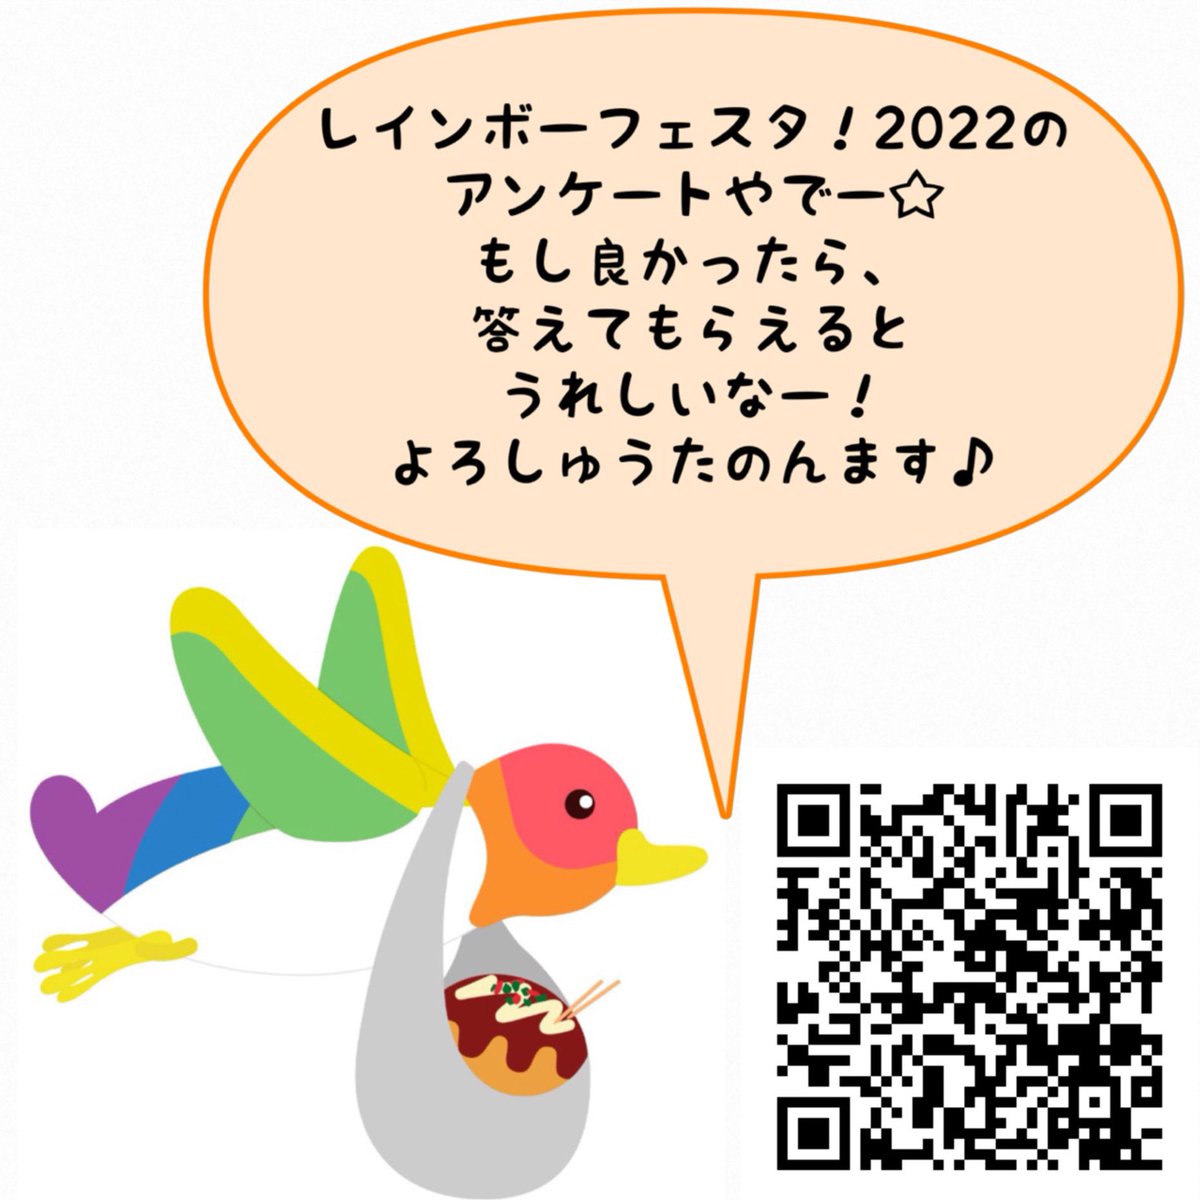 レインボーフェスタ！2022のアンケートやでー！ 良かったら、答えたってなー☆ よろしゅうたのんますー♪ #関西レインボーパレード #レインボーフェスタ2022 #レインボーフェスタ #大阪 #LGBT #扇町公園 docs.google.com/forms/d/1ksAgl… mtbrs.net/ps_rainbowfest…